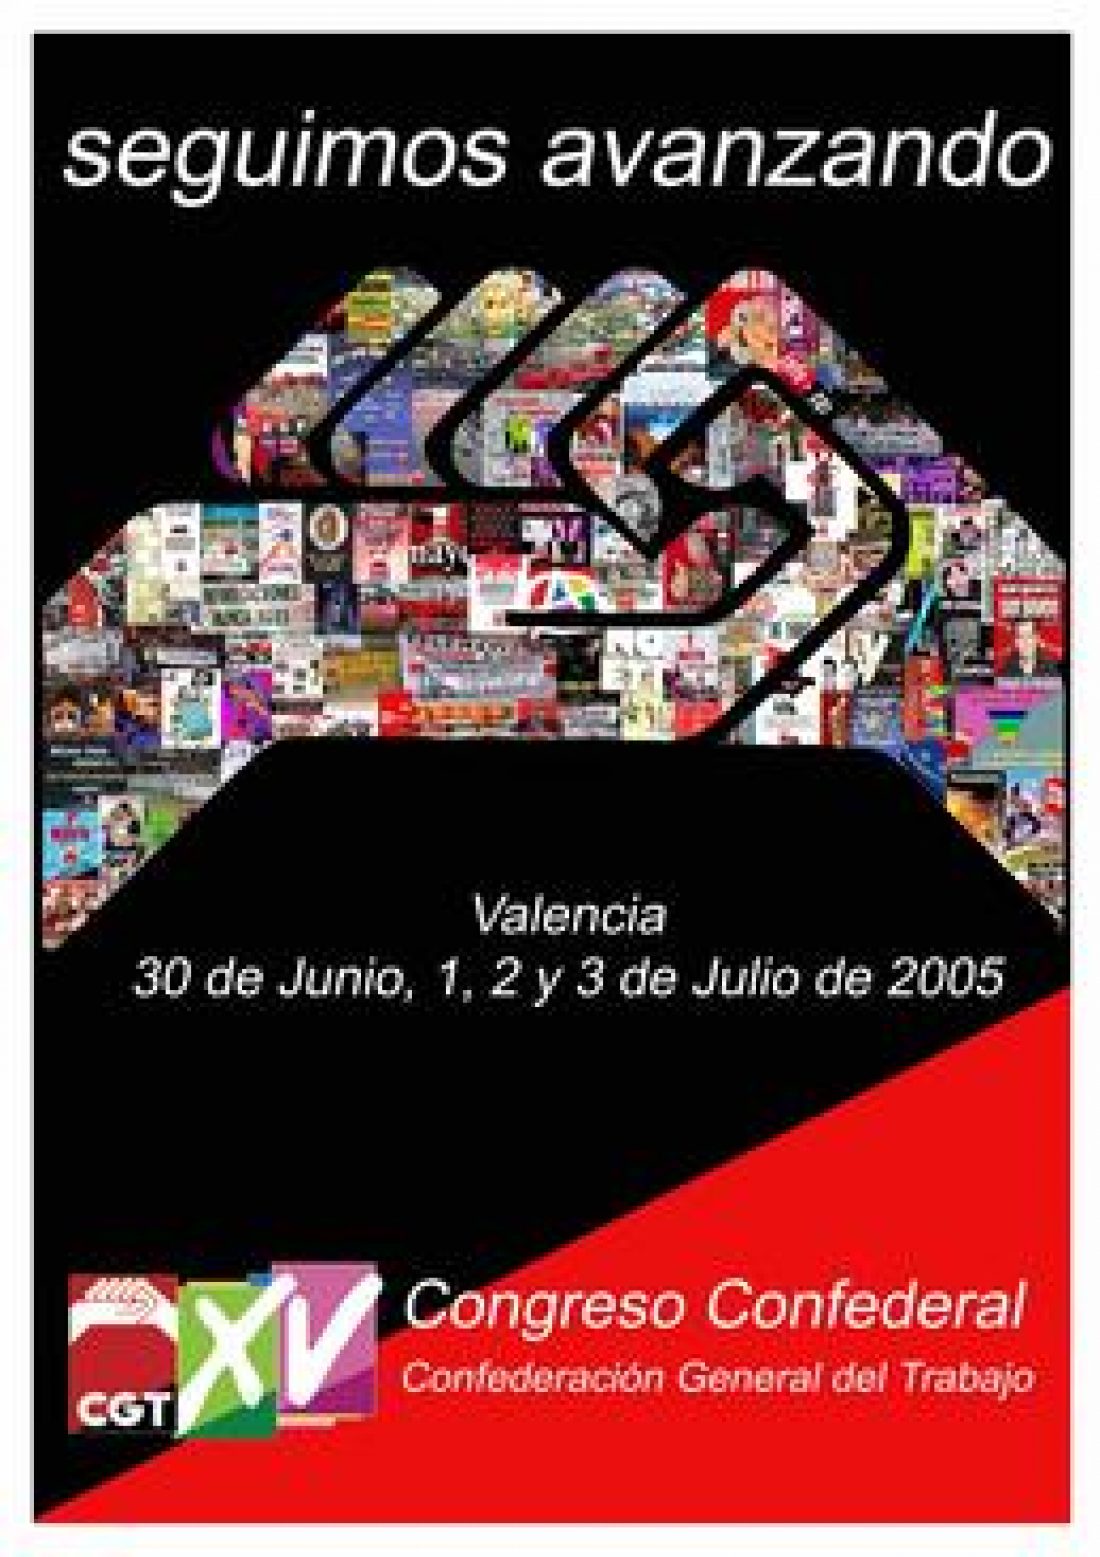 Una resolución del XV Congreso de la CGT manifiesta su total confianza a los zapatista y declara al Grupo-BBVA como “entidad nom grata”